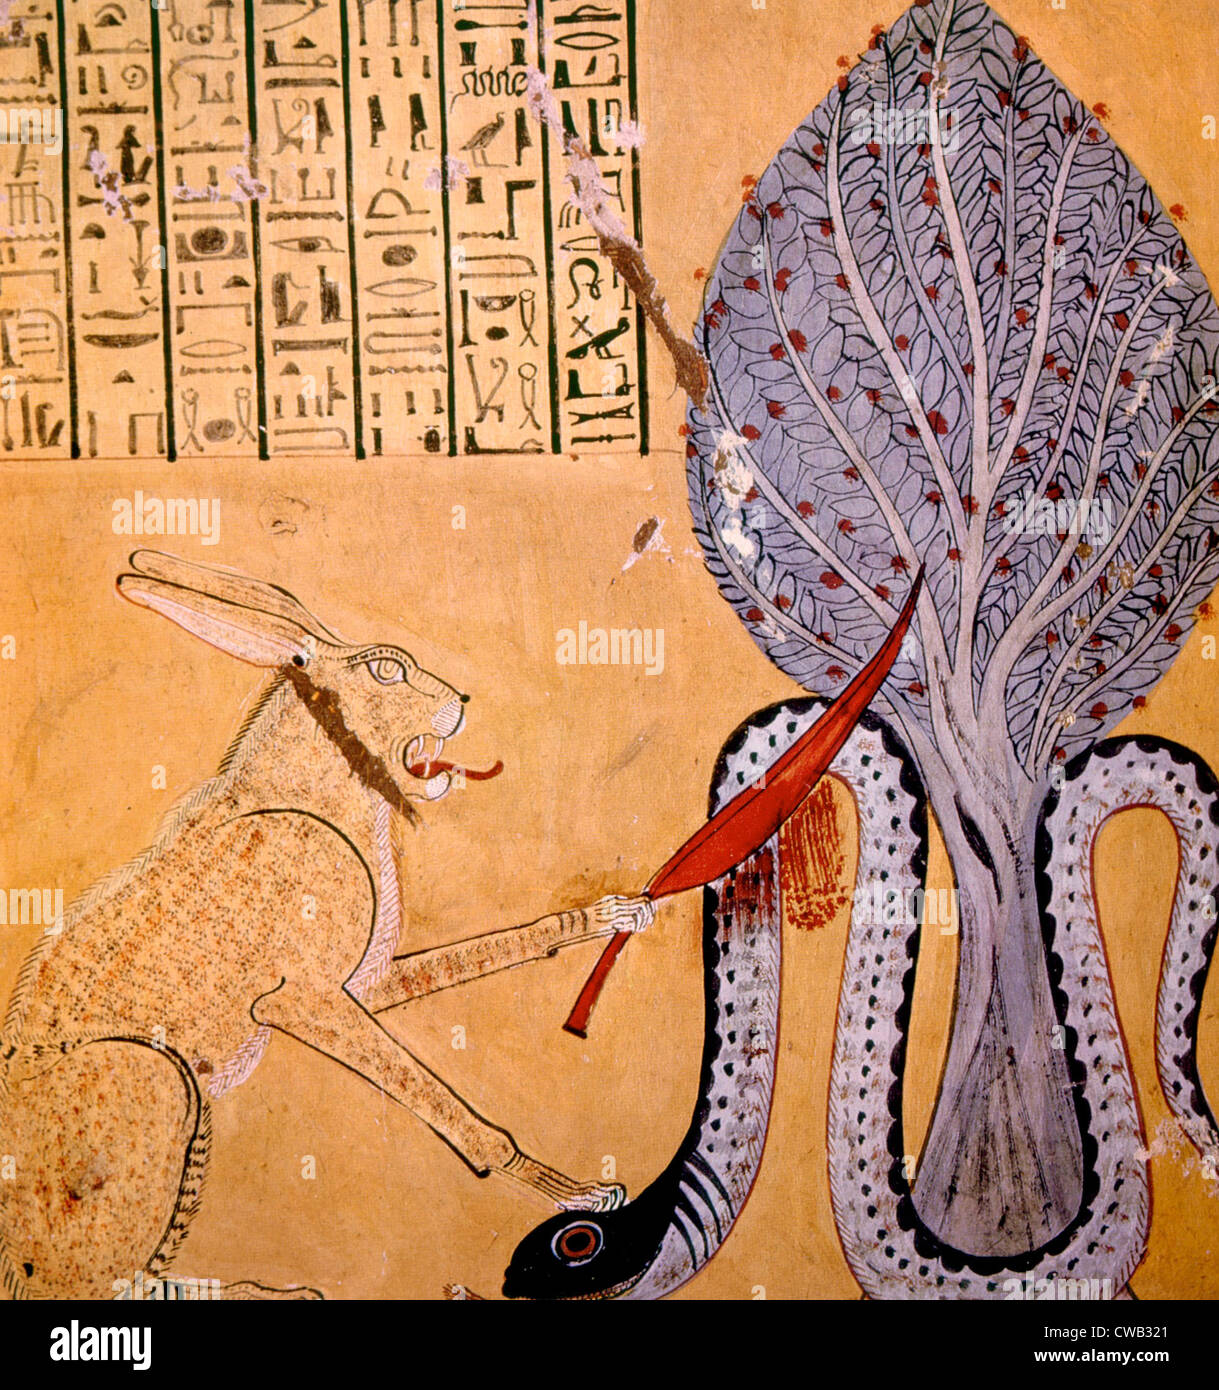 Malen einer Kaninchen-Schmuckschildkröte Katze verbunden mit dem Sonnengott Ra, die Tötung der Schlangengott der Unterwelt Apophis, aus dem Grab Stockfoto